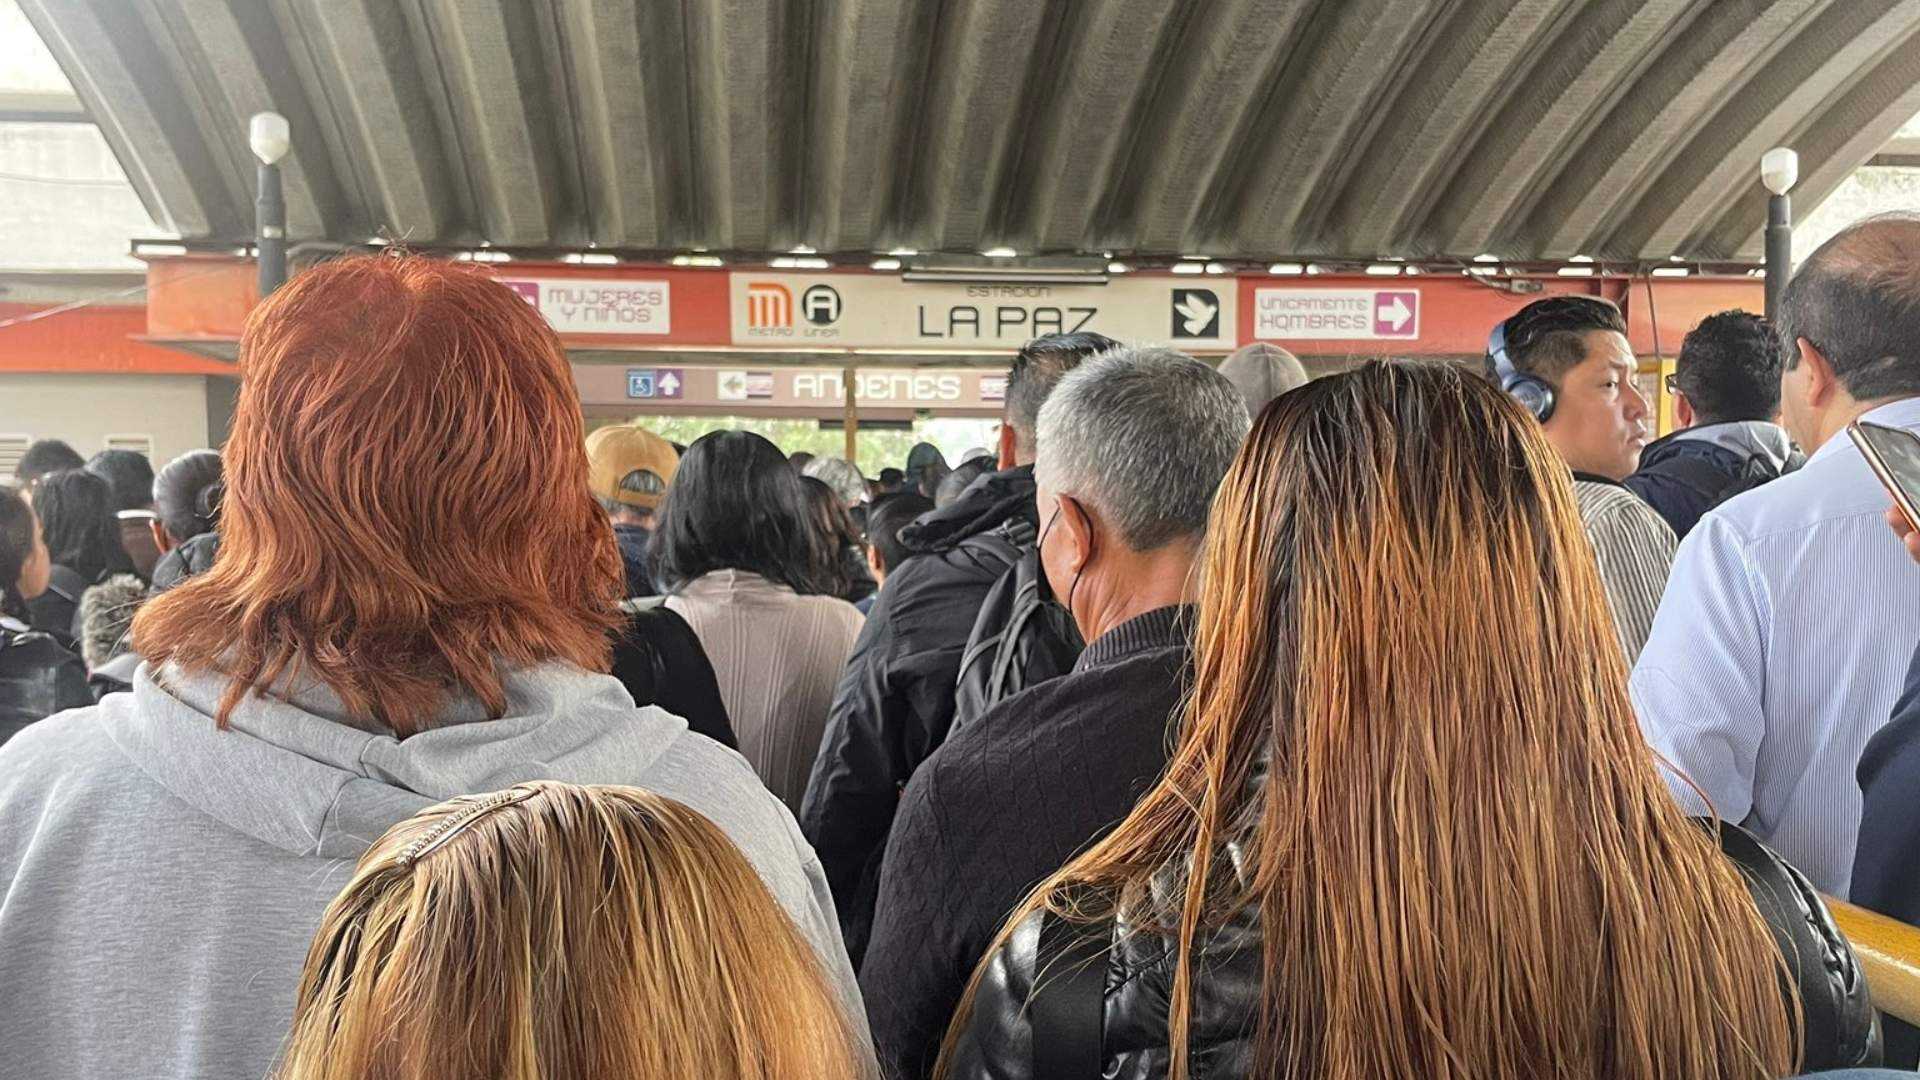 El Metro CDMX suspendió el servicio en la Línea A, por lo que los usuarios de dicho trayecto sufrieron para llegar a sus destinos